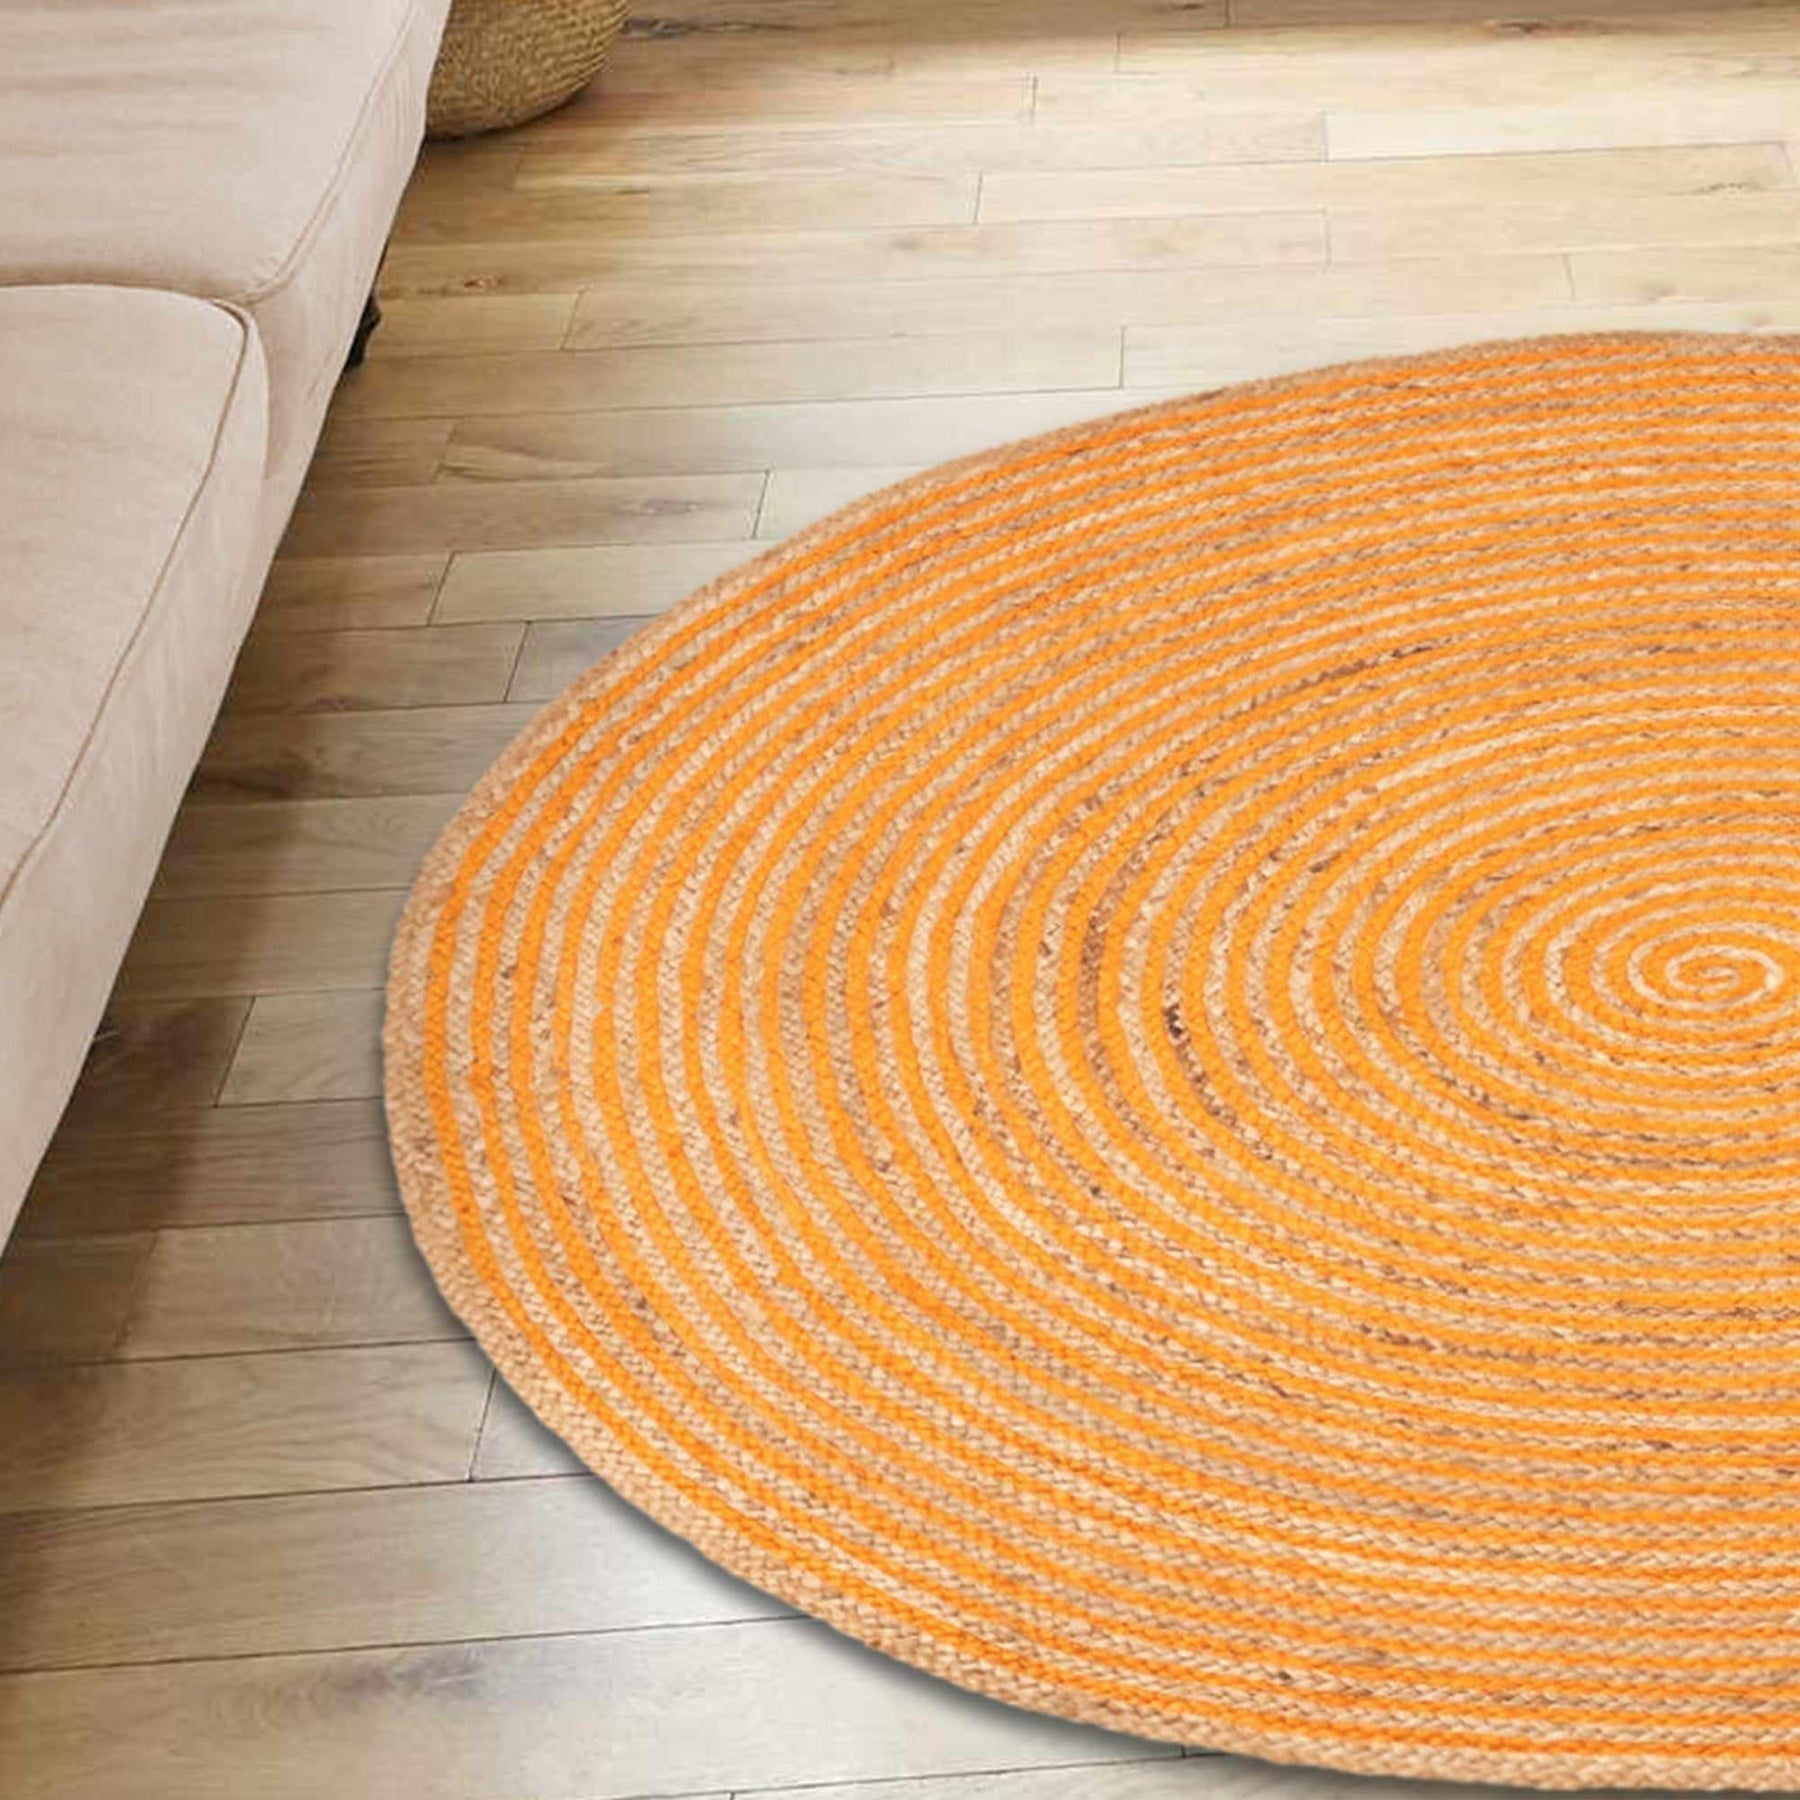  Superior Braided Round Jute Indoor Area Rug - Orange